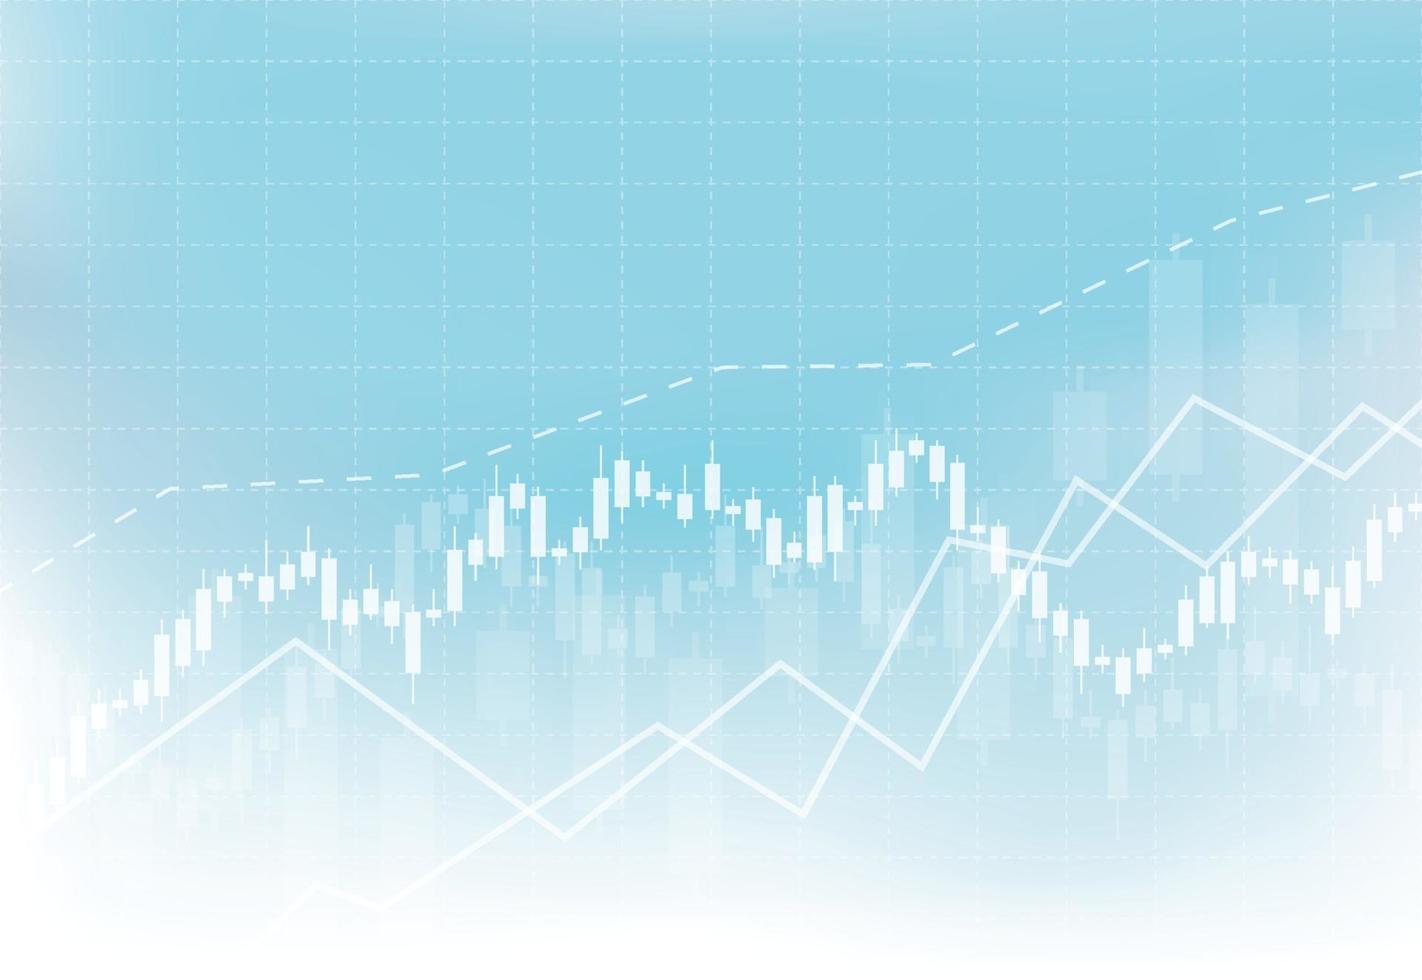 Gráfico del gráfico del palo de la vela del negocio del comercio de inversiones del mercado de valores en el diseño del fondo blanco punto alcista, tendencia del gráfico. ilustración vectorial vector